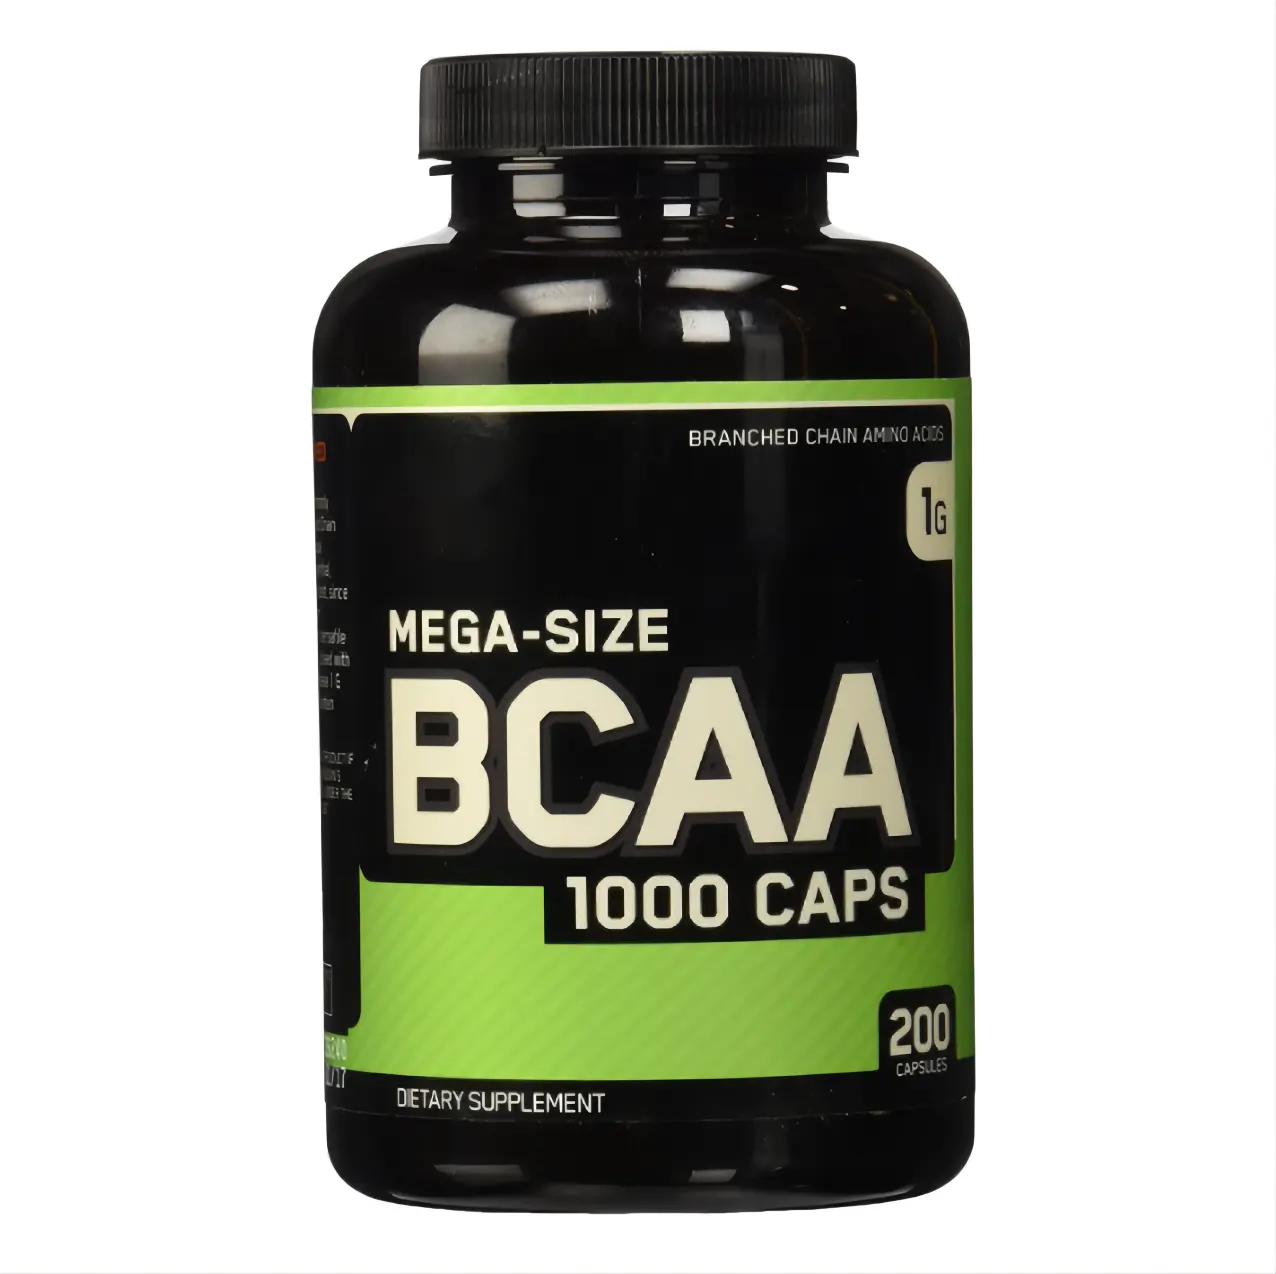 Спортивная добавка, капсулы BCAA для эфирных аминокислот с разветвленной цепочкой, улучшение восстановления мышц, повышение энергии